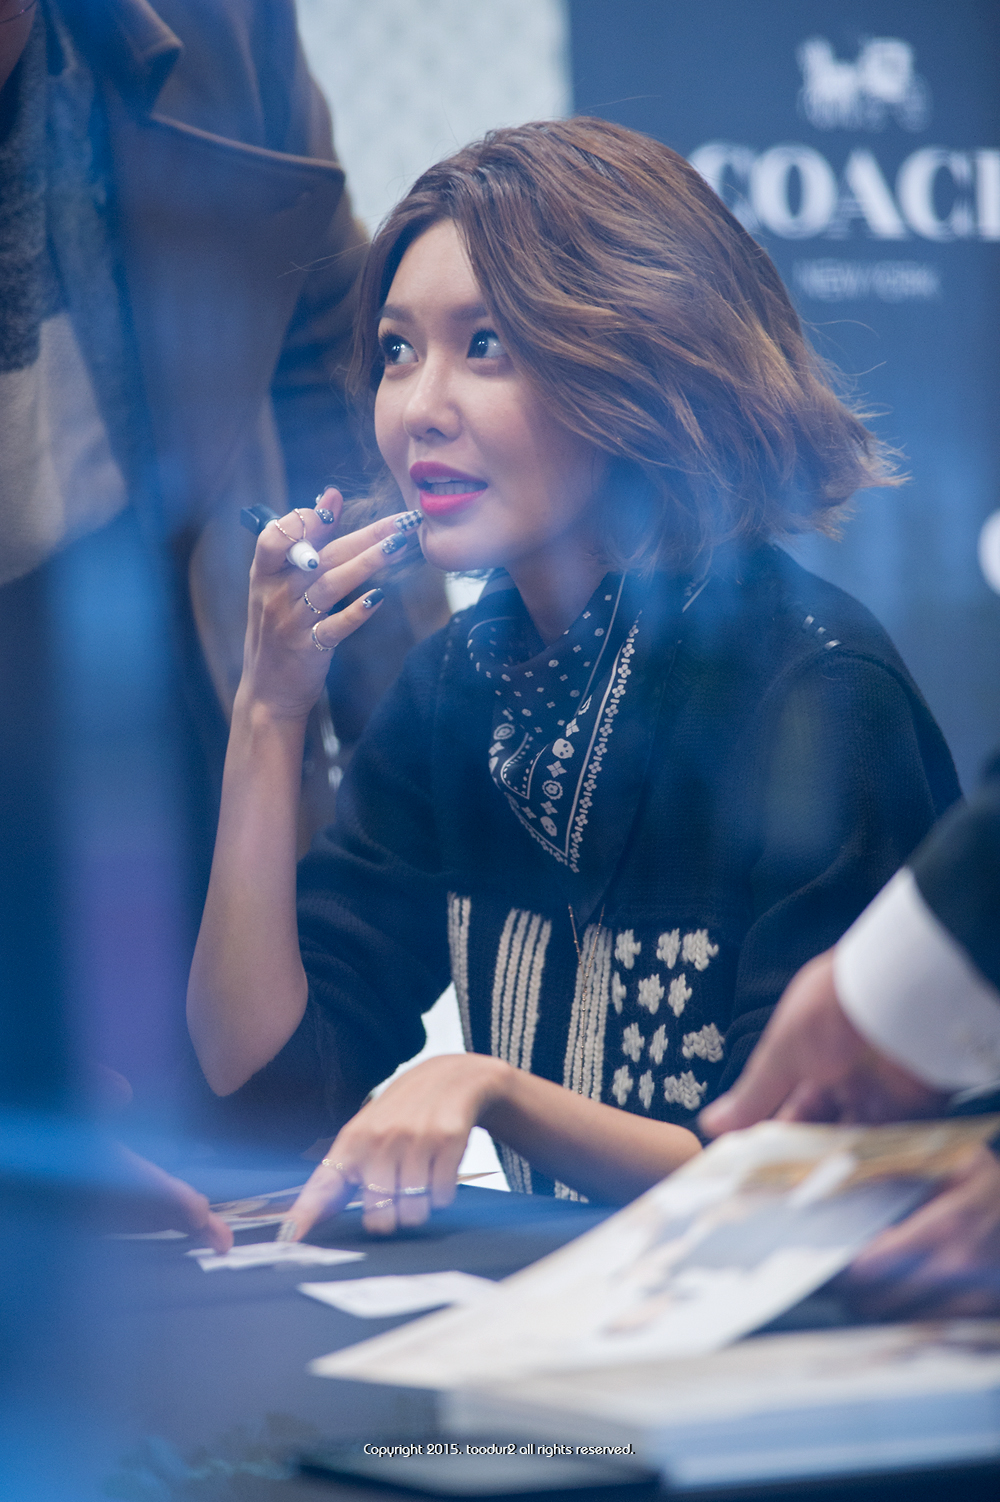  [PIC][27-11-2015]SooYoung tham dự buổi Fansign cho thương hiệu "COACH" tại Lotte Department Store Busan vào trưa nay 2452644C5659232703DA6A